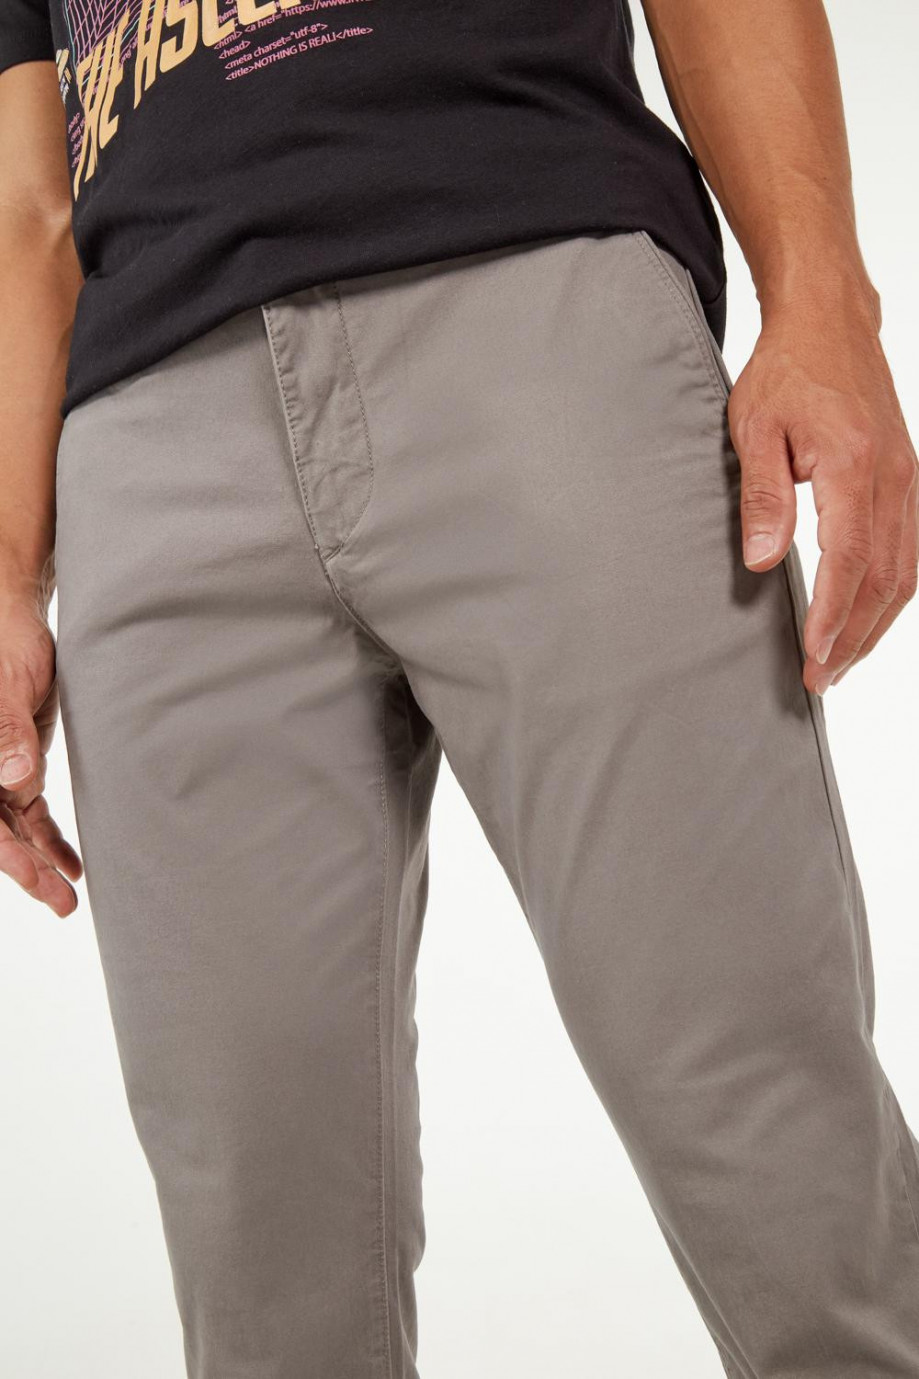 Pantalón tipo chino tiro medio unicolor con bolsillos en ribete